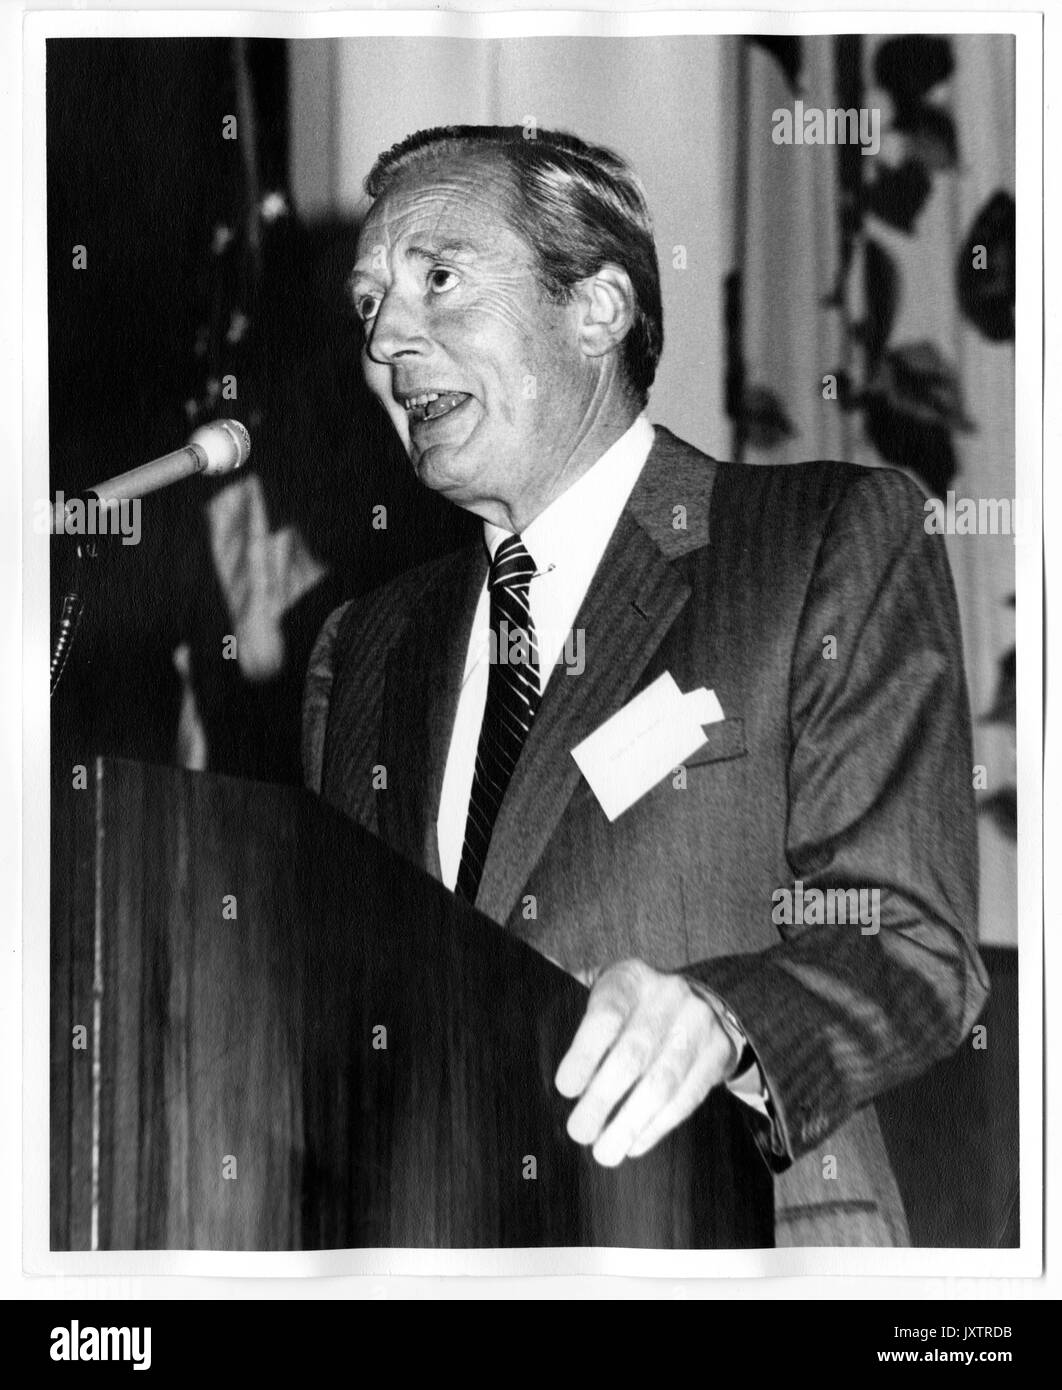 Andre Brewster, campagne pour l'Université John Hopkins, Candide Brewster livrer un discours à l'Greenbrier, trois quarts vue, campagne pour l'événement de l'Université Johns Hopkins, 1983. Banque D'Images